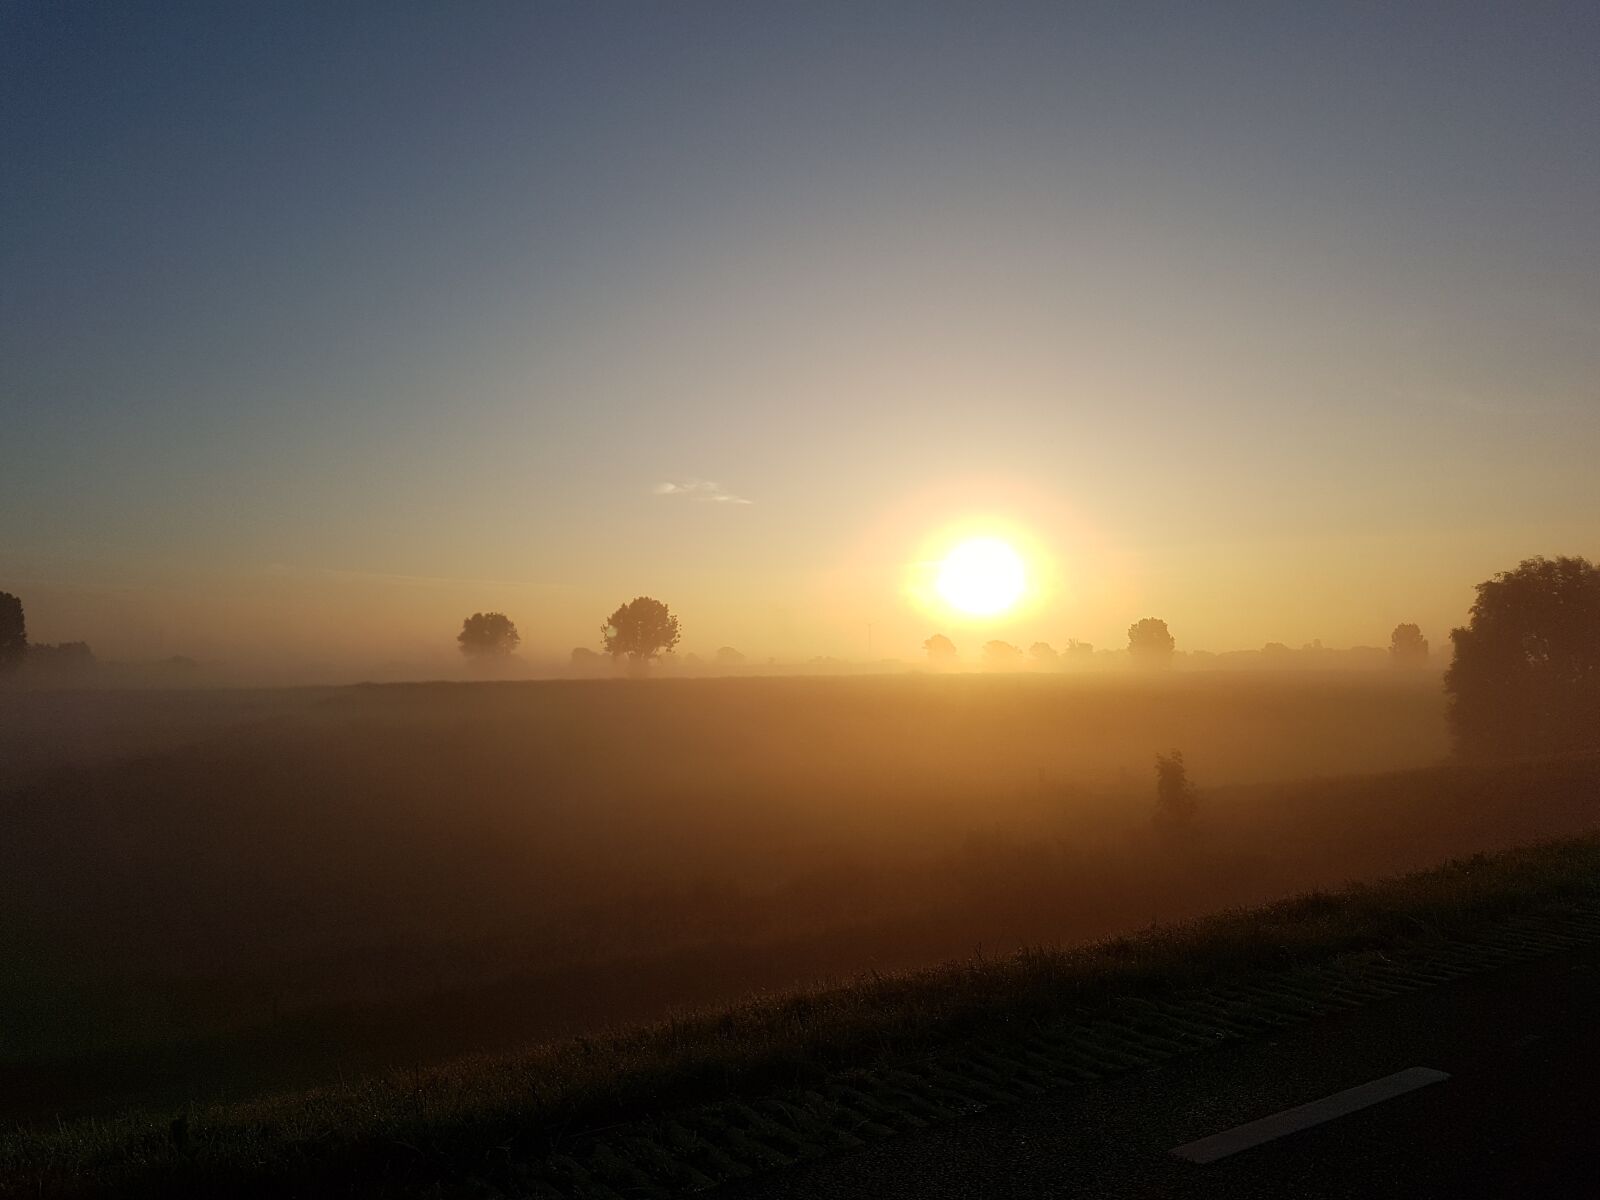 Samsung Galaxy S7 sample photo. Morning sun, fog, nature photography